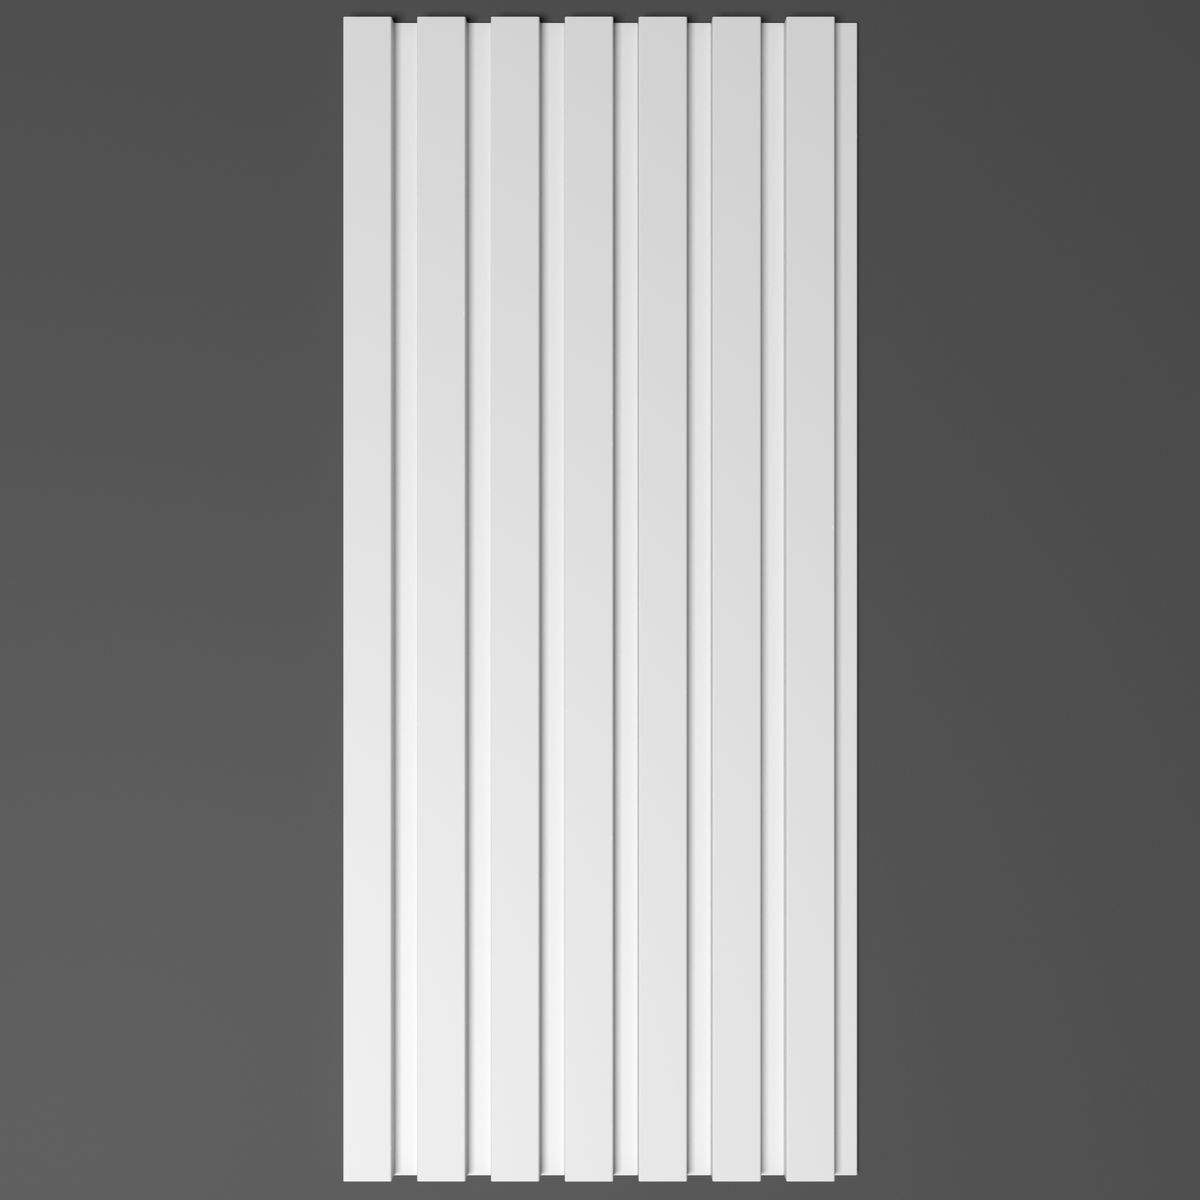 Панель декоративная "Рейки" из полимера Grand Decor HCR 503